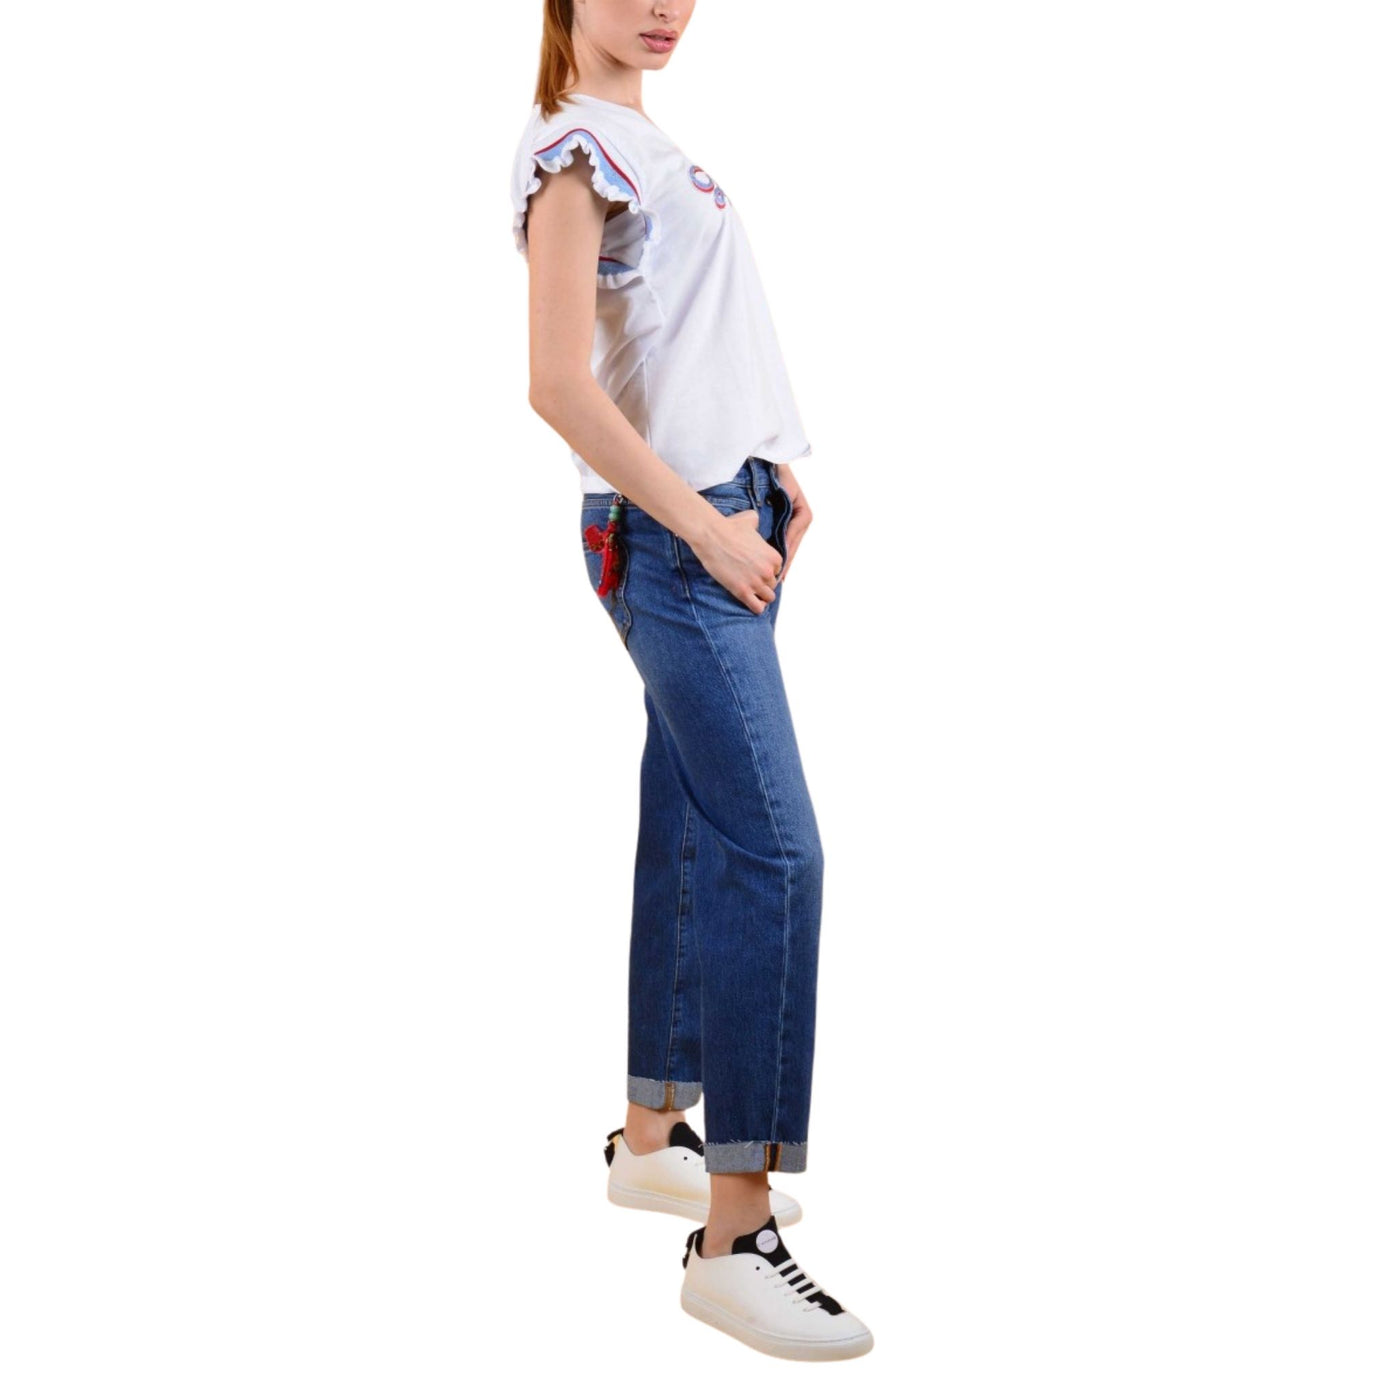 Jeans da donna firmati Roy Roger's su modella vista laterale per intero